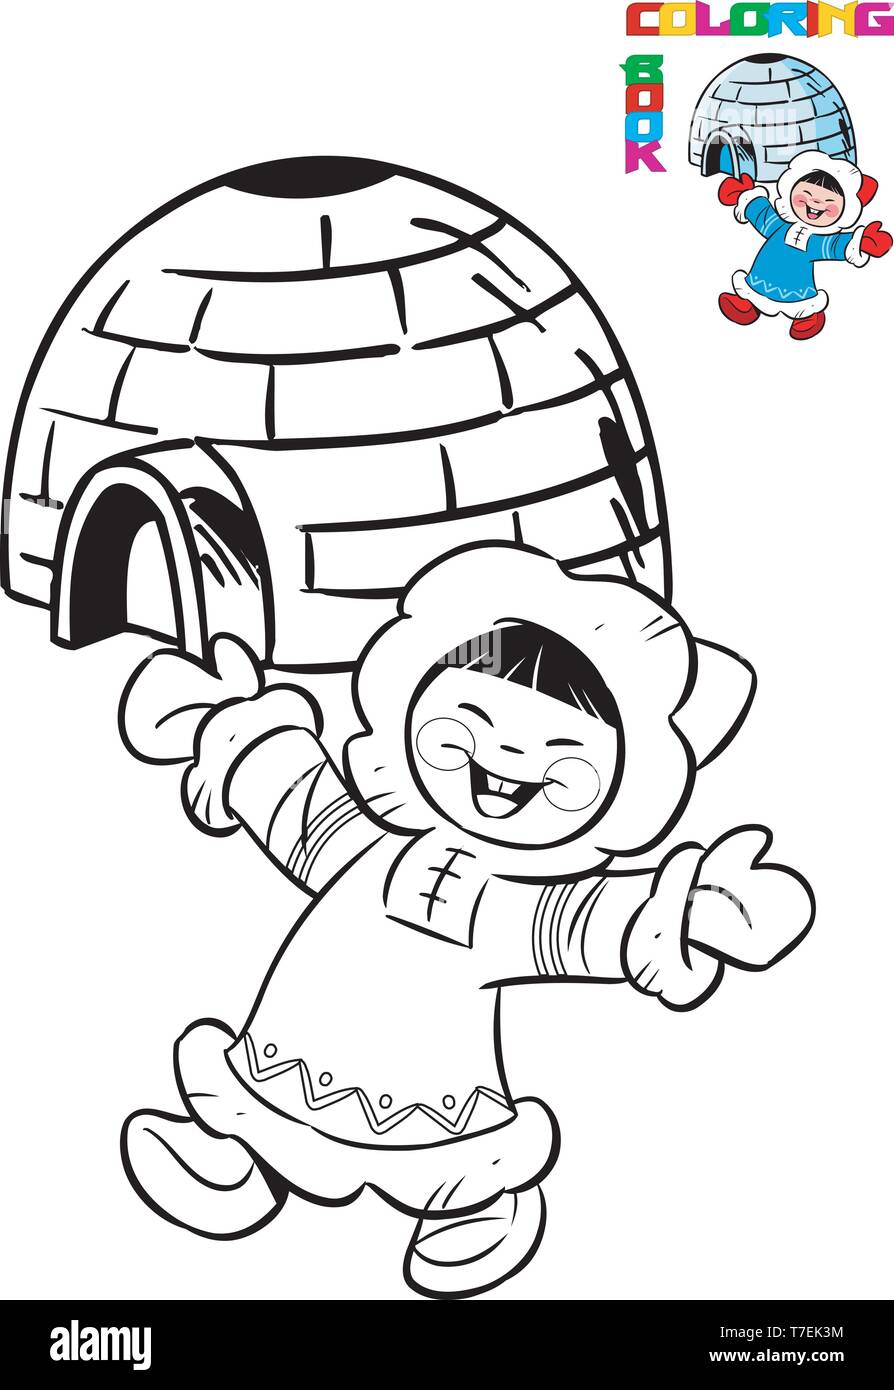 La figura mostra cartoon eskimo in abito tradizionale sullo sfondo dell'igloo. Illustrazione fatta nella sagoma nera per il libro da colorare Illustrazione Vettoriale